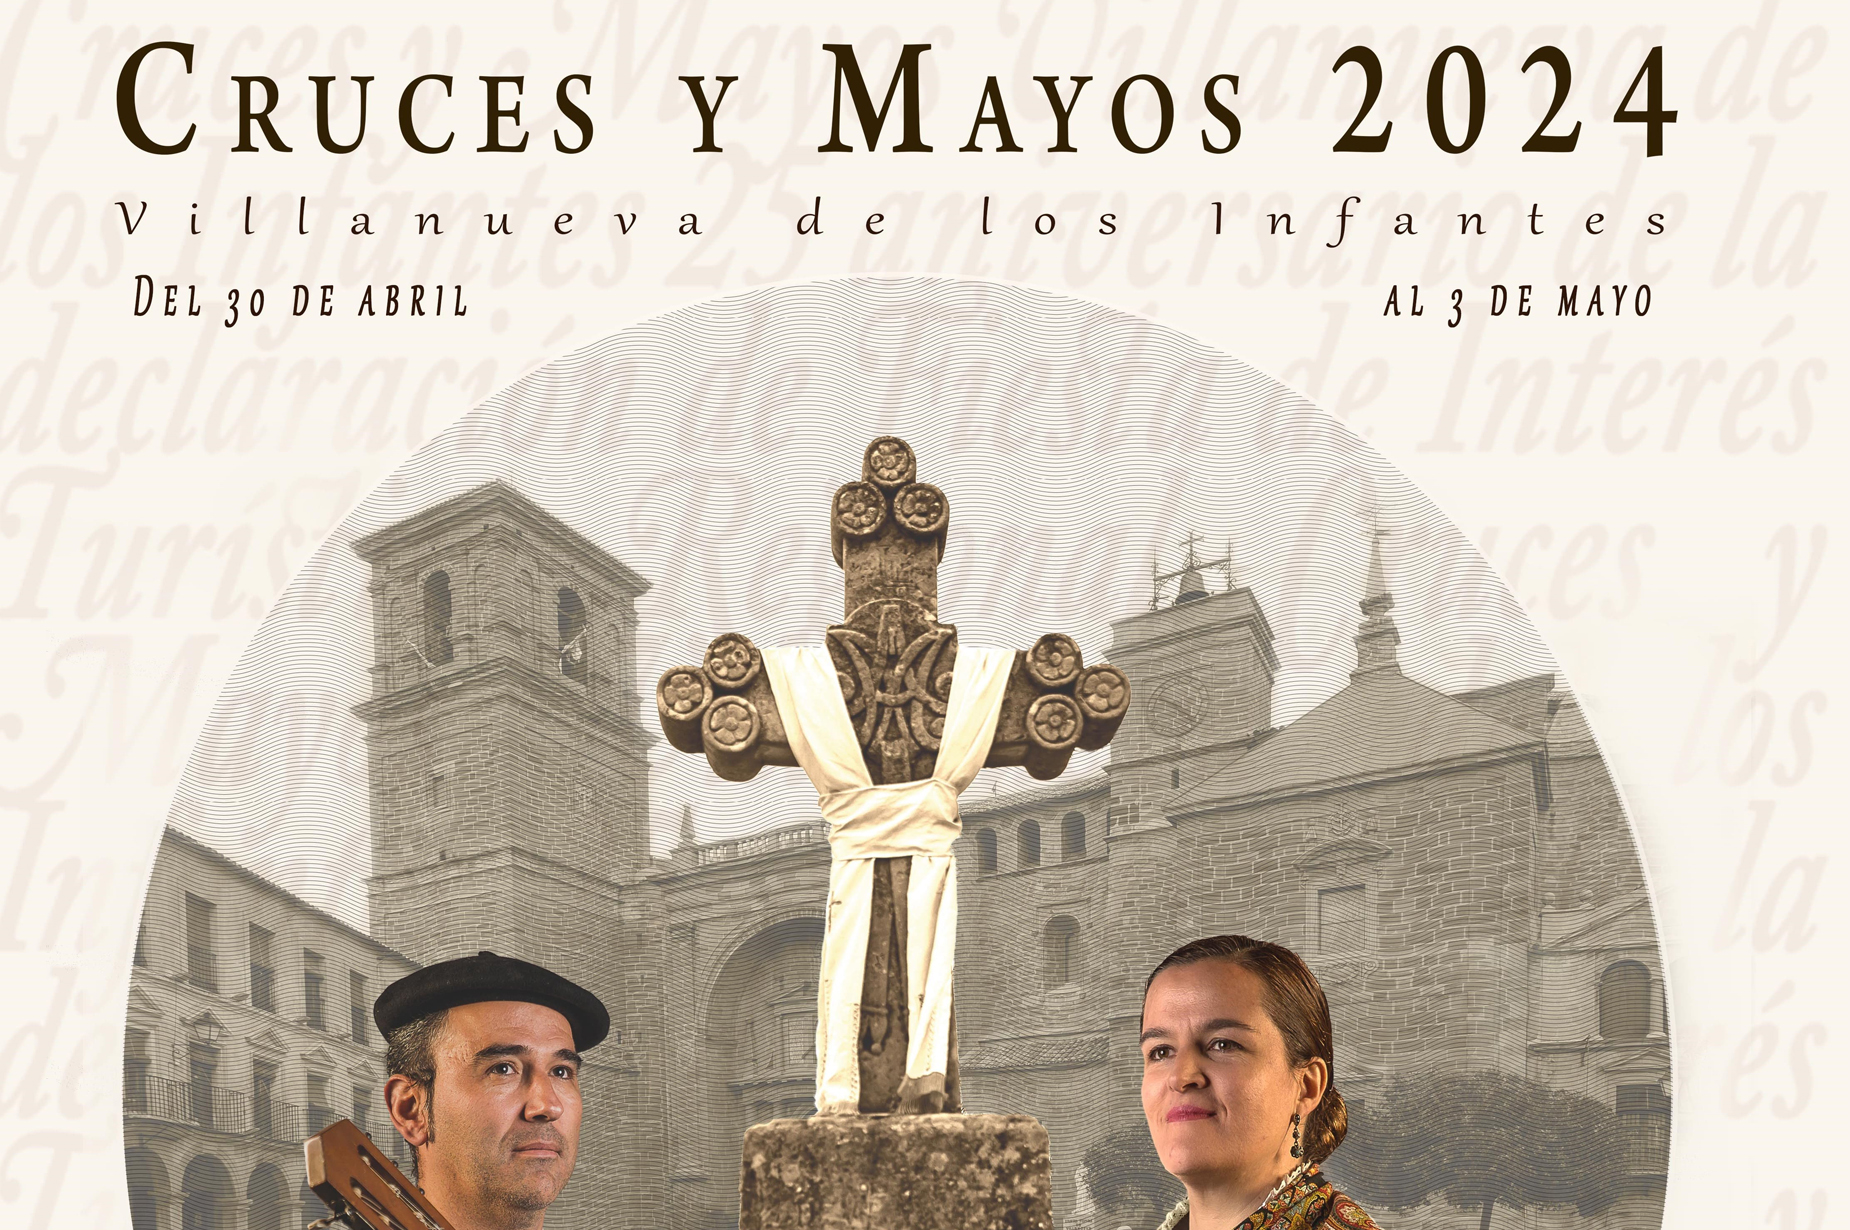 Se presenta el cartel anunciador de las Cruces y Mayos 2024 de Villanueva de los Infantes